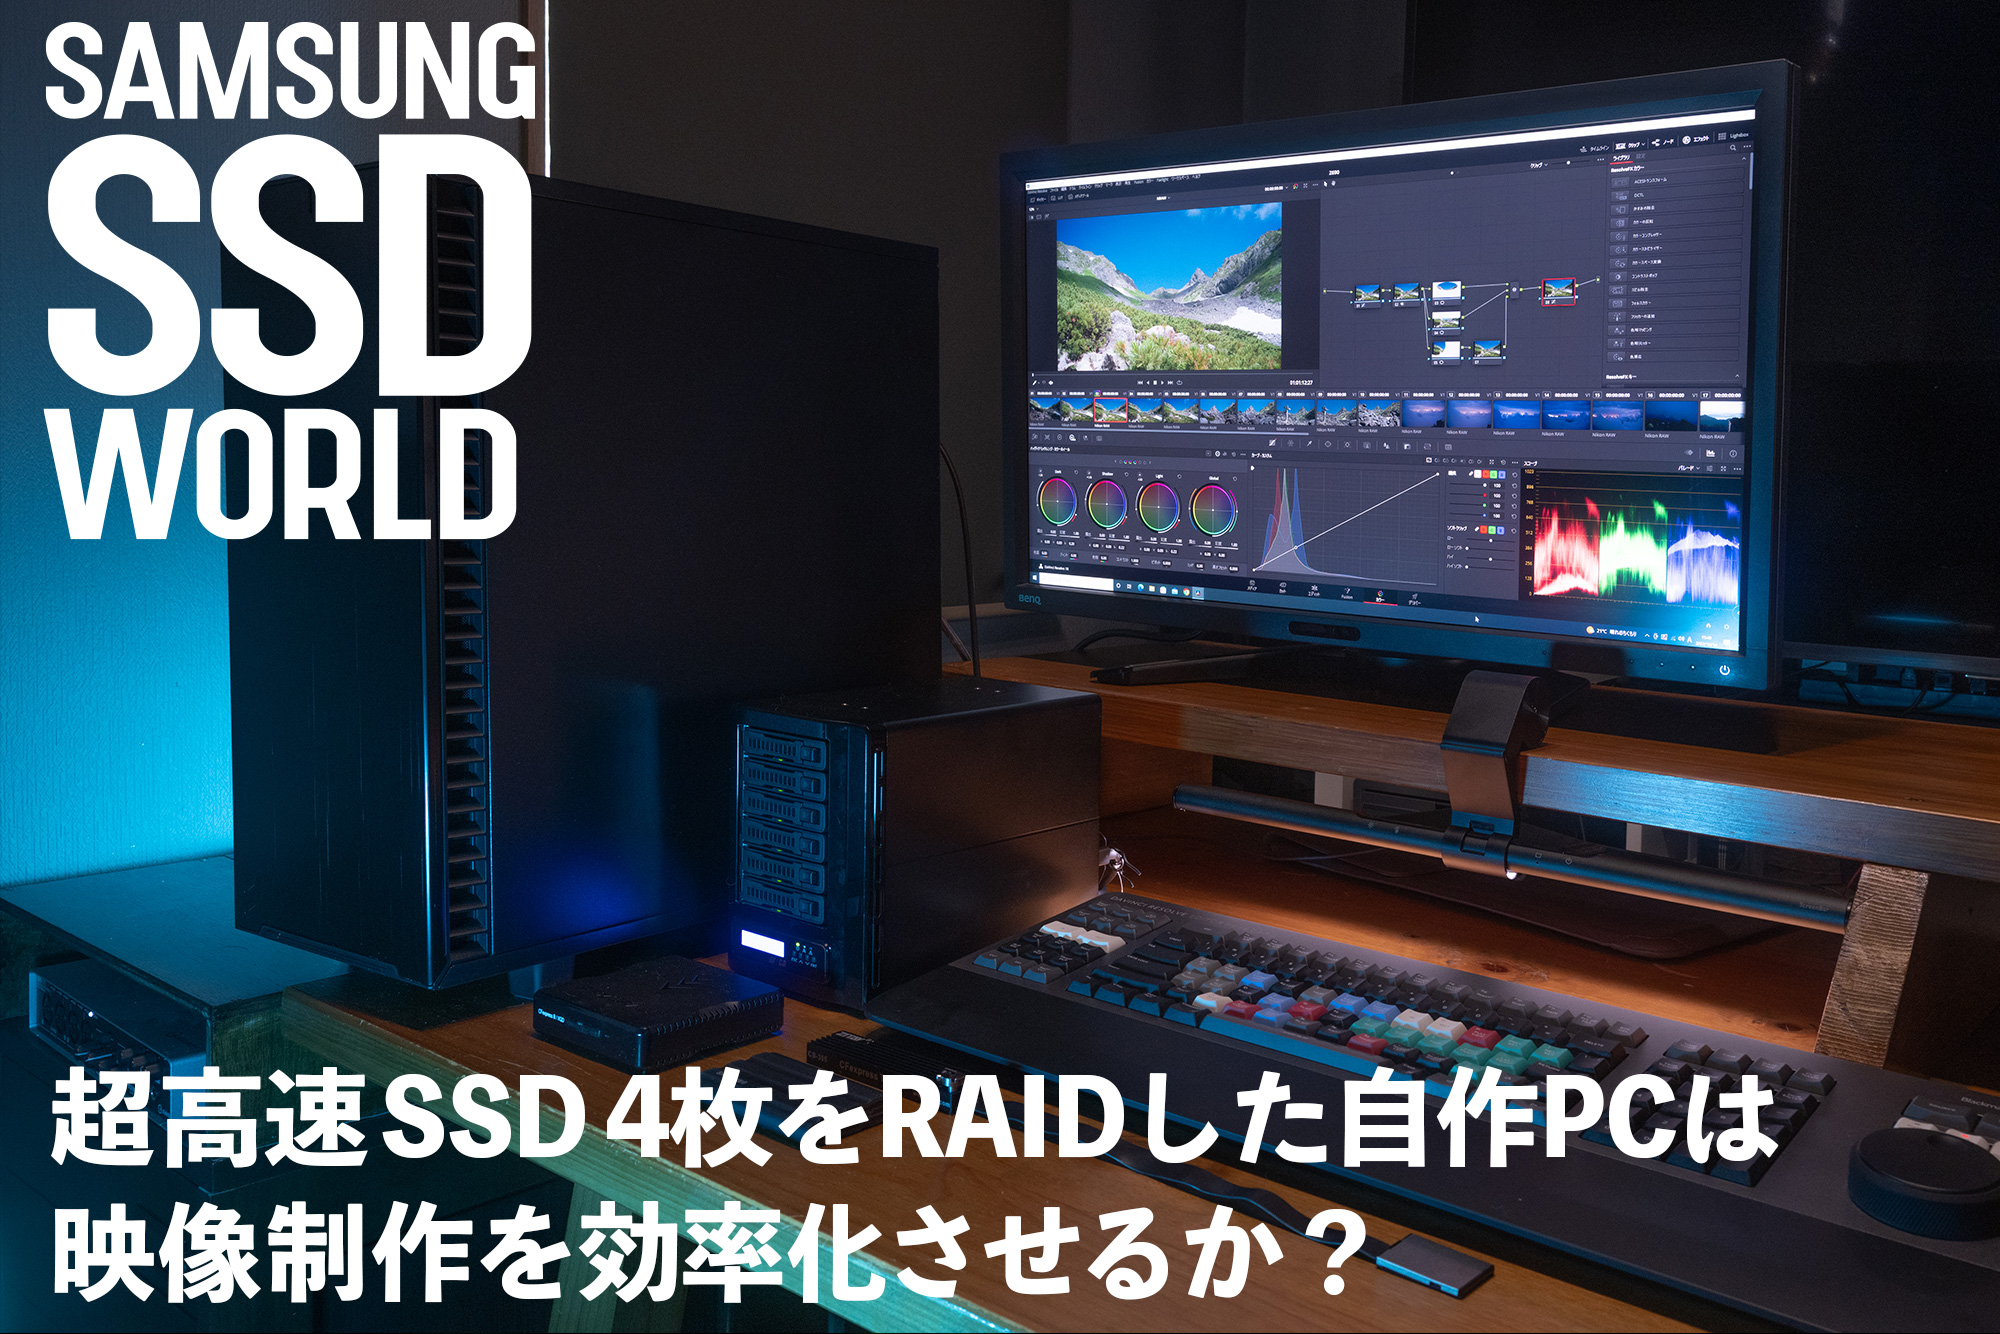 SAMSUNG SSD WORLD超高速 SSD4枚をRAIDした自作PCは映像制作を効率化